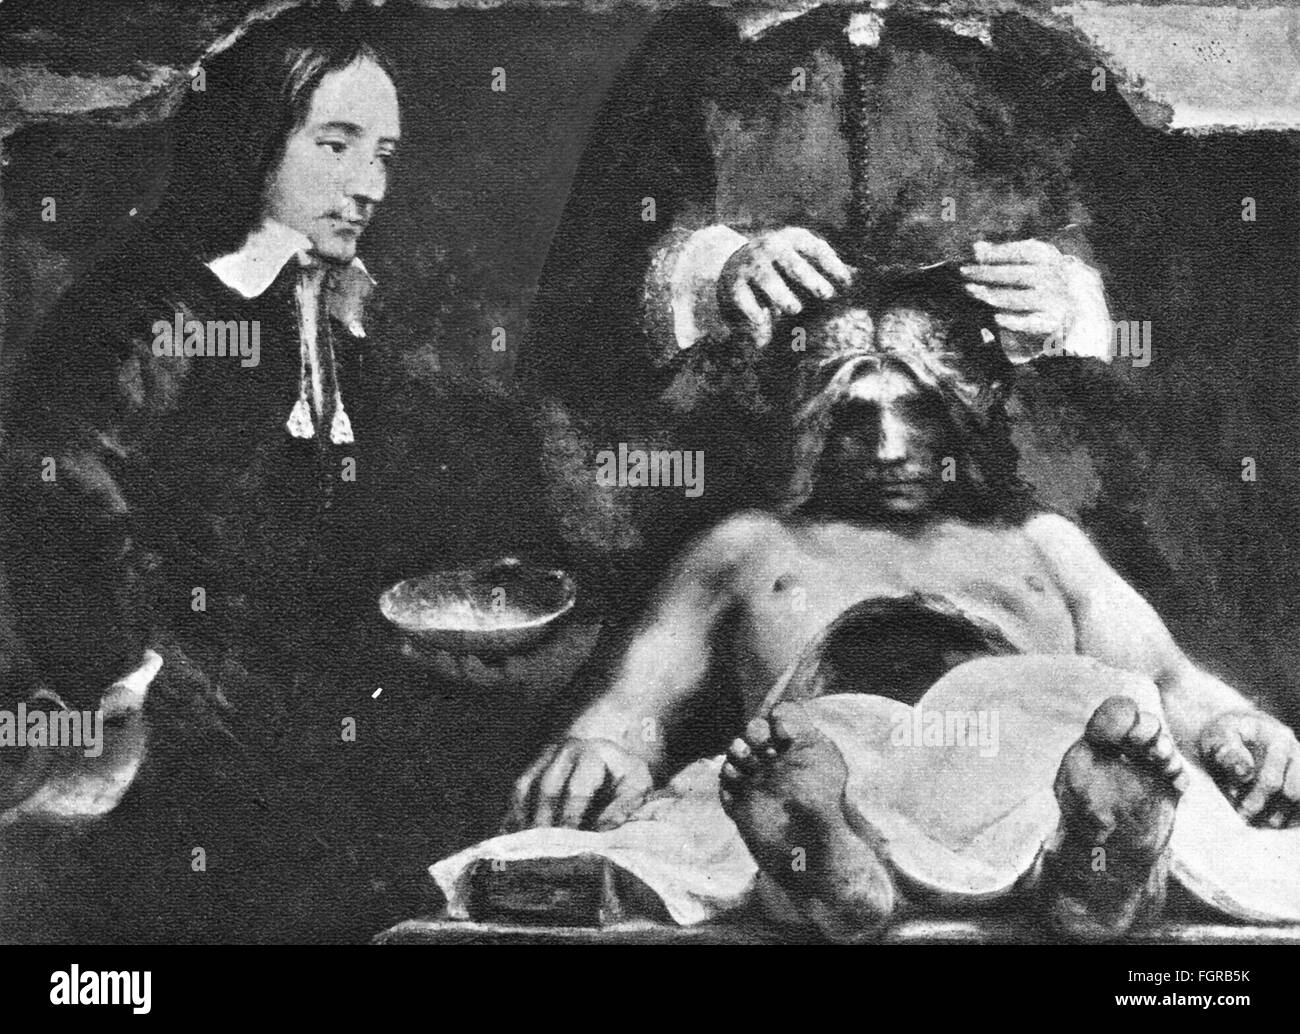 Medicina, anatomia, dissezione / autopsia, dopo la pittura frammento 'la lezione di anatomia del Dr. Joan Deyman' di Rembrandt van Rijn (1606 - 1669), 1656, stampa, diritti aggiuntivi-clearences-non disponibile Foto Stock